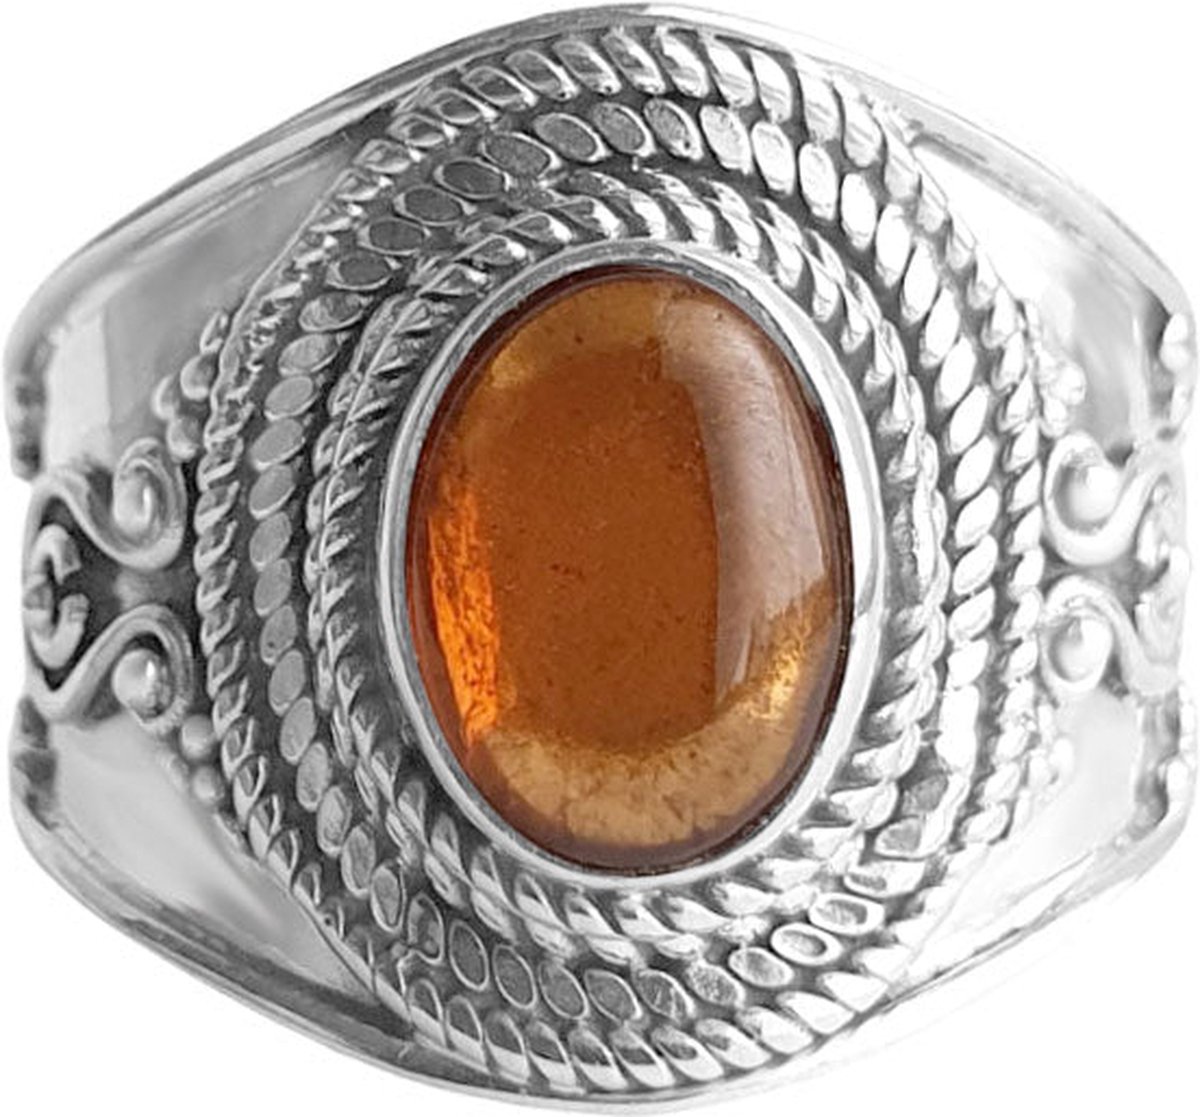 Jewelryz | Hina | Ring 925 zilver met hessoniet edelsteen | 19.00 mm / maat 60